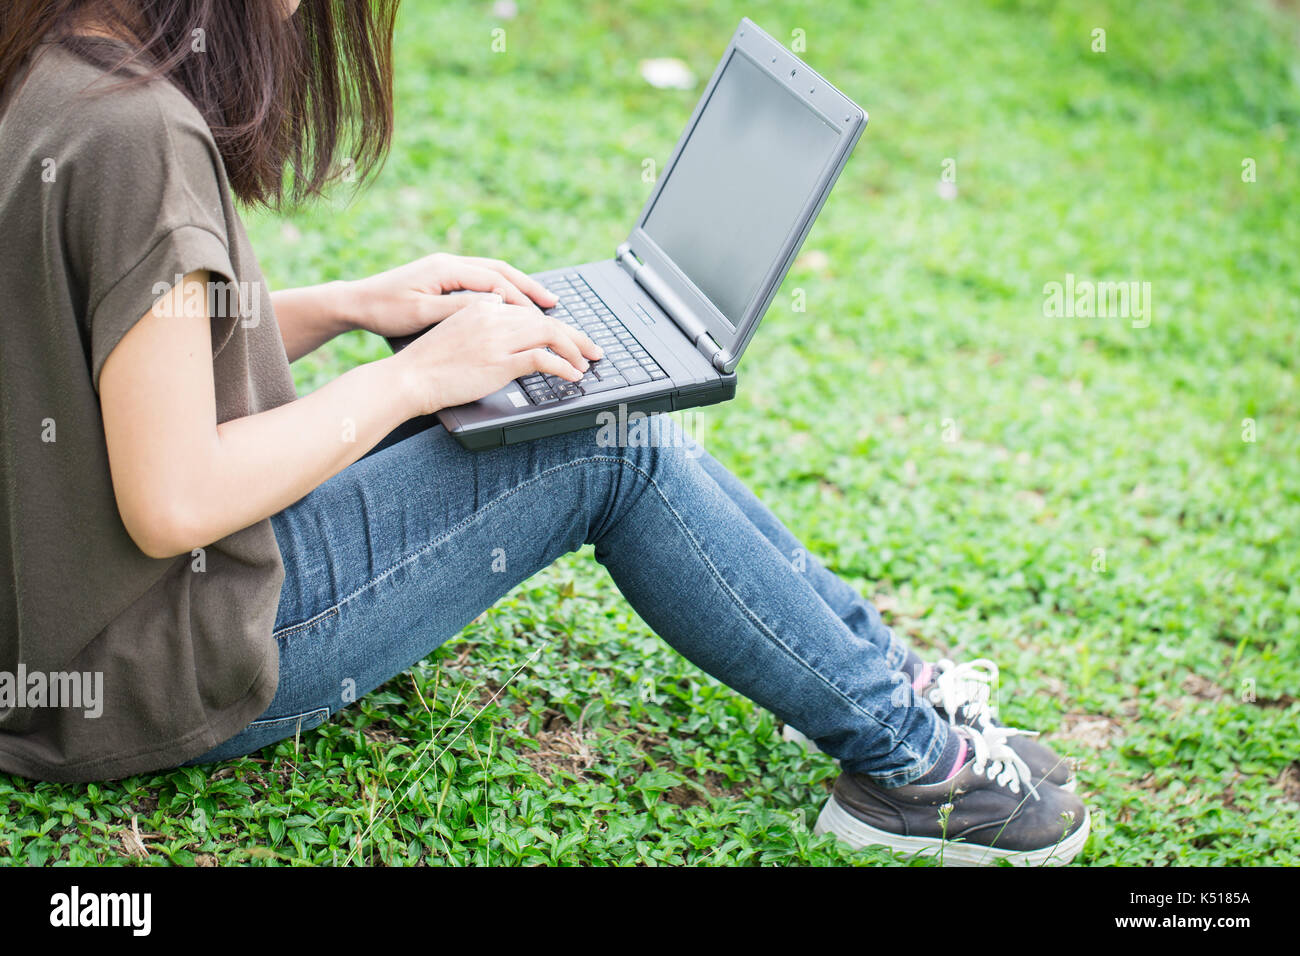 Mode de vie moderne de la technologie, de l'adolescence les femmes étudiant en utilisant un ordinateur portable avec les données de l'entreprise travaillant dans l'université. Banque D'Images